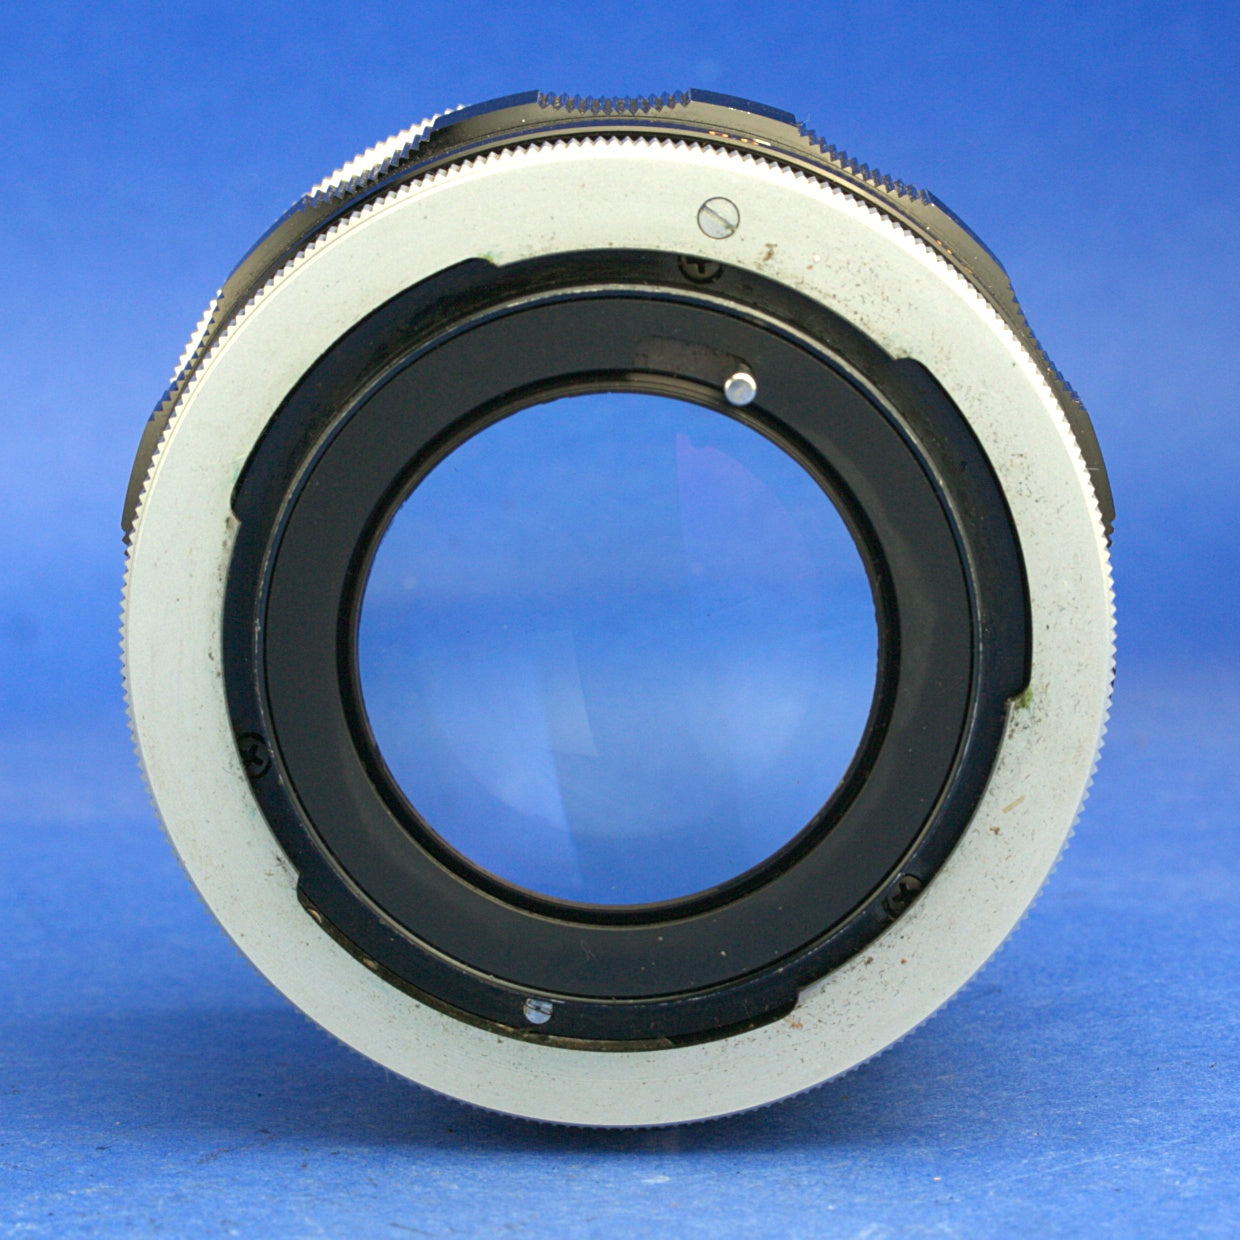 Canon FL 55mm 1.2 Lens